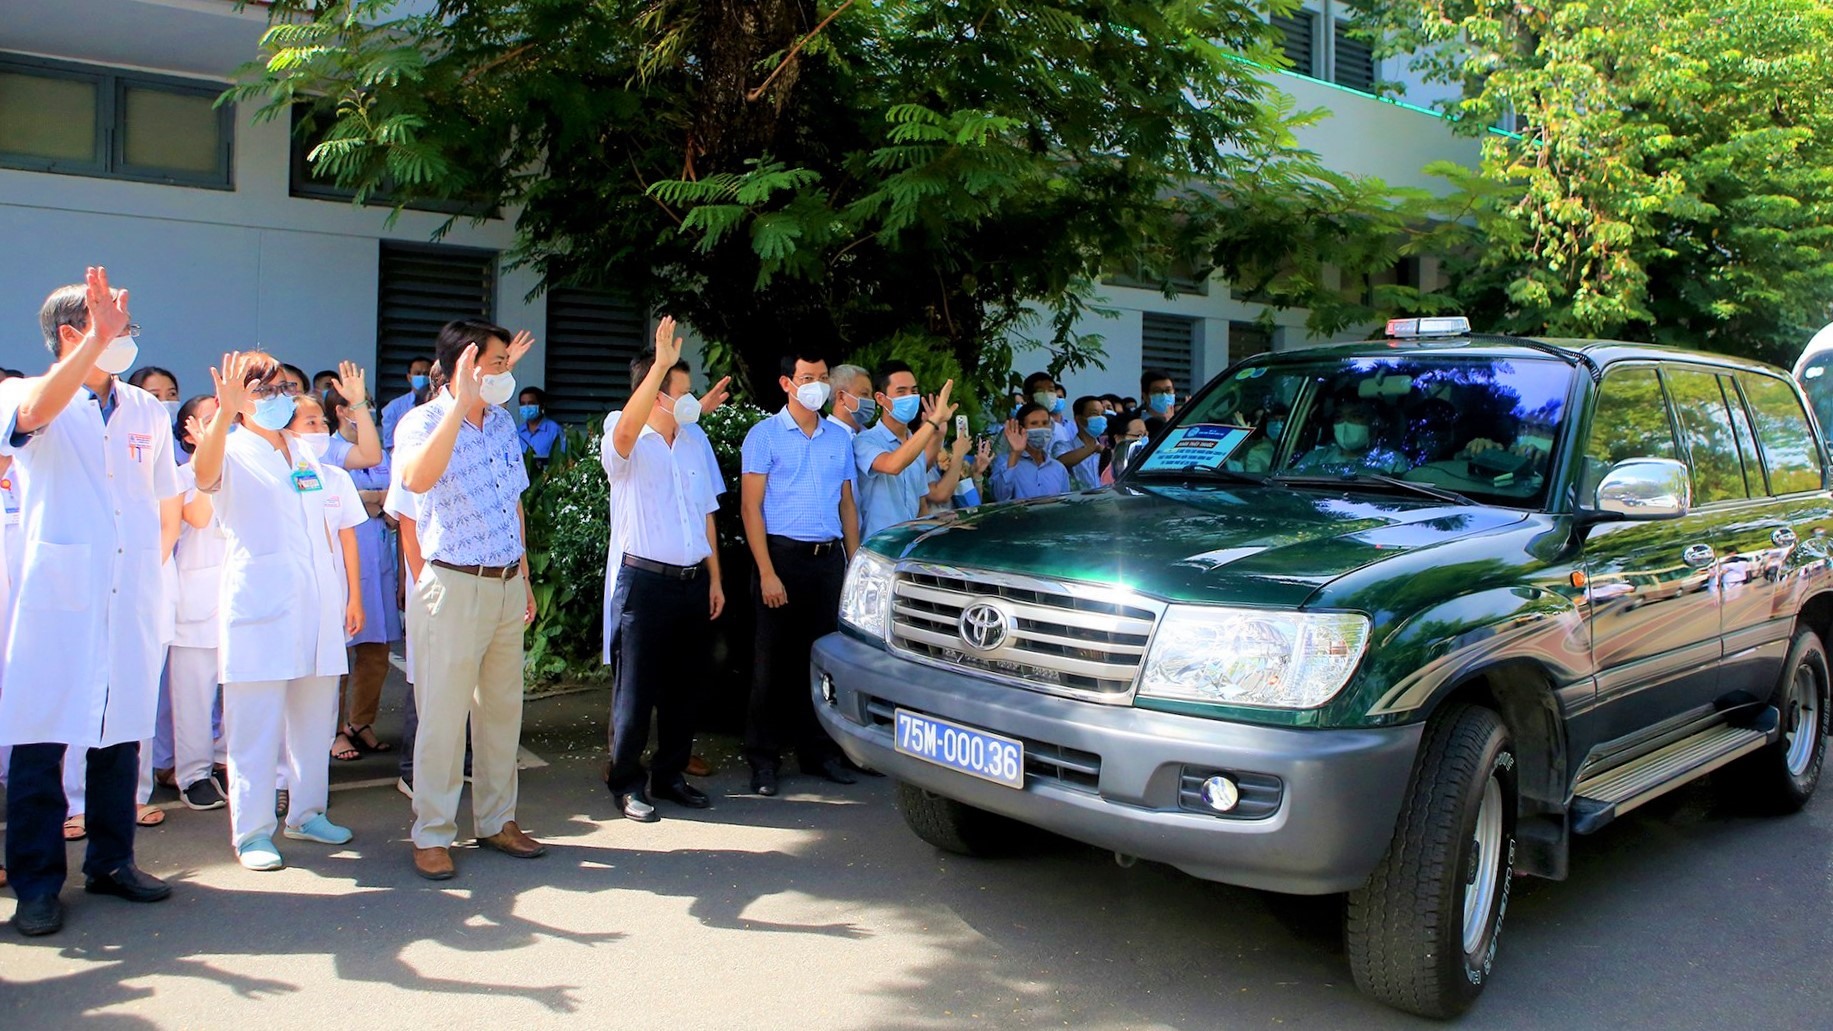 Sáng cùng ngày, đoàn thầy thuốc của Bệnh viện Trung ương Huế đã lên đường vào TP. Hồ Chí Minh để triển khai, vận hành Trung tâm Hồi sức tích cực người bệnh COVID-19.